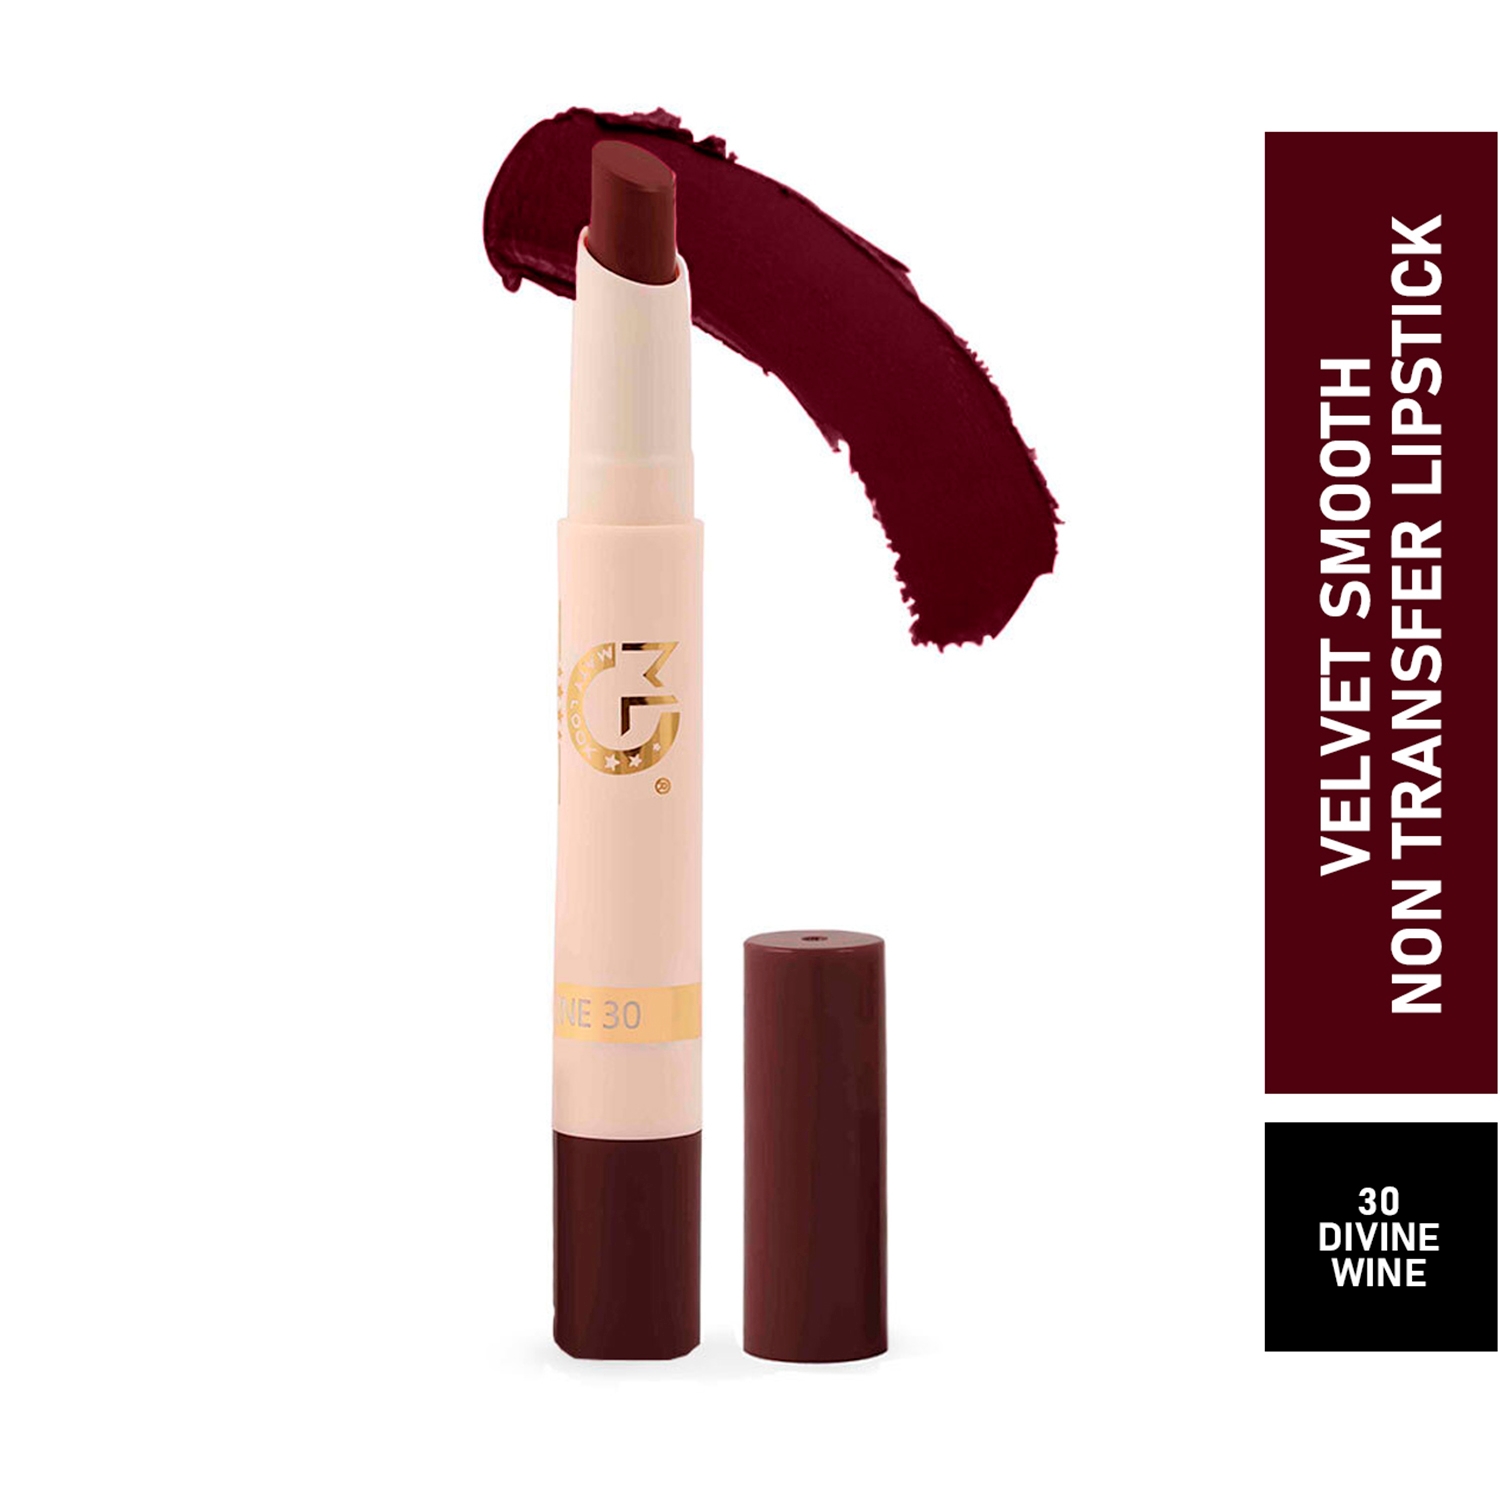 Matt Look Velvet Smooth Non-Transfer Lipstick - 30 Divine Wine (2g)